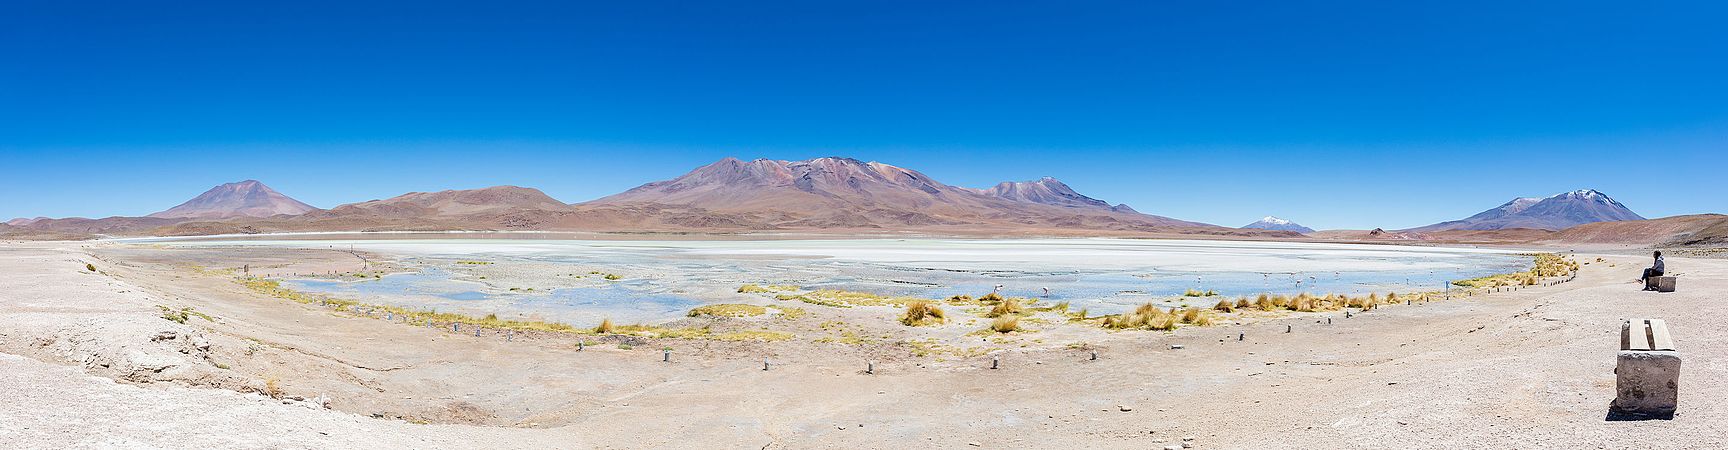 圖為玻利維亞西南部北利佩斯省埃迪翁達湖全景。湖泊海拔4121米，面積3平方公里